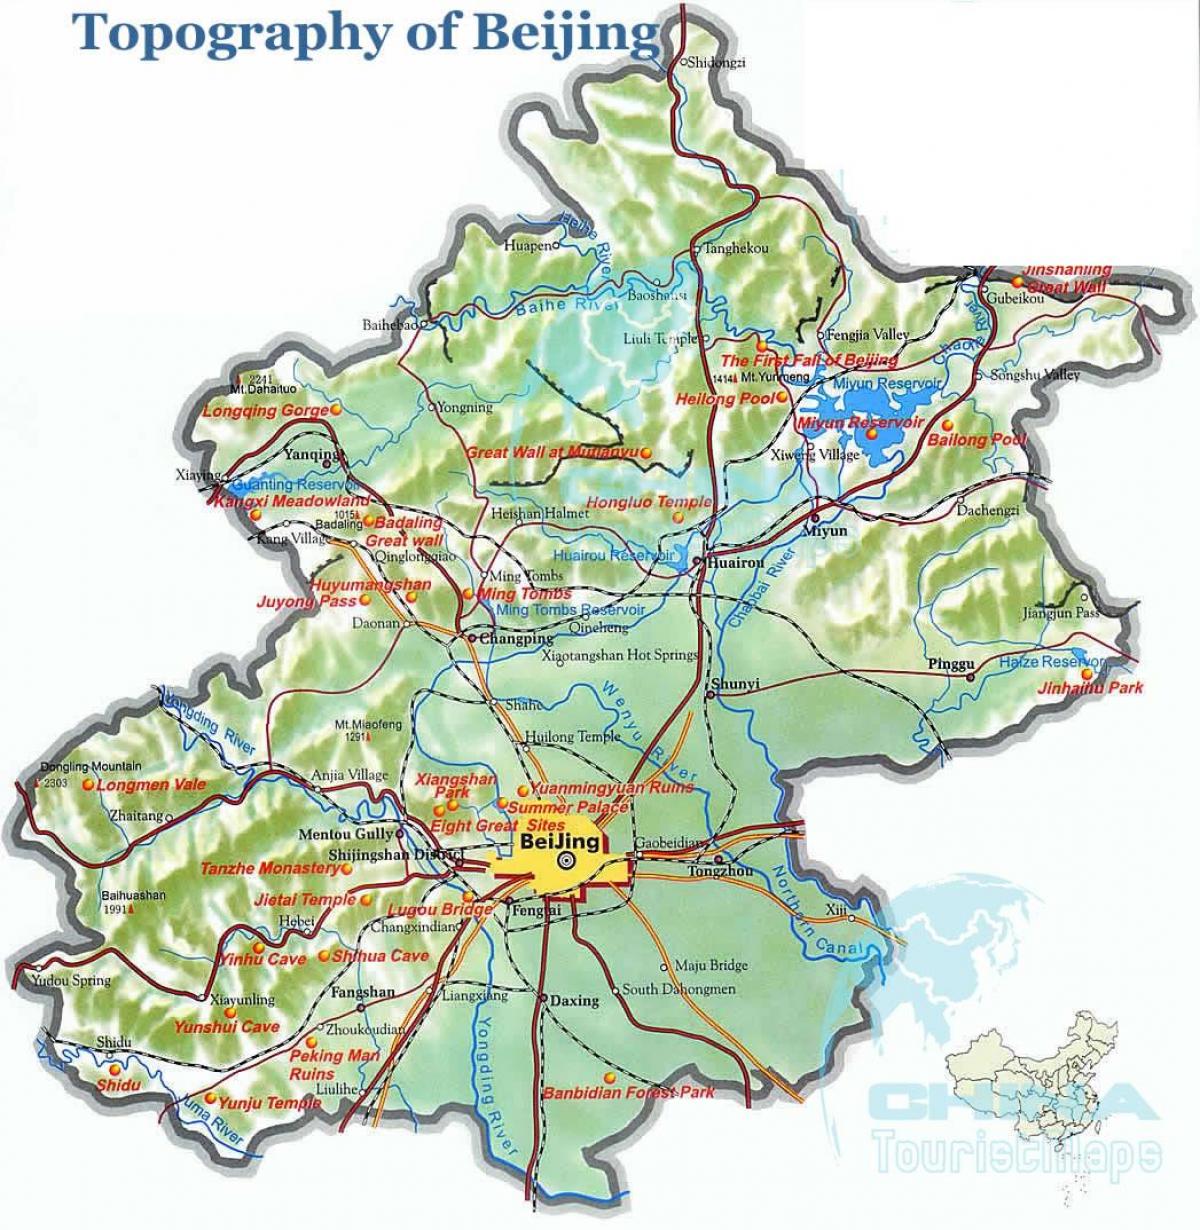 نقشه توپوگرافی پکن